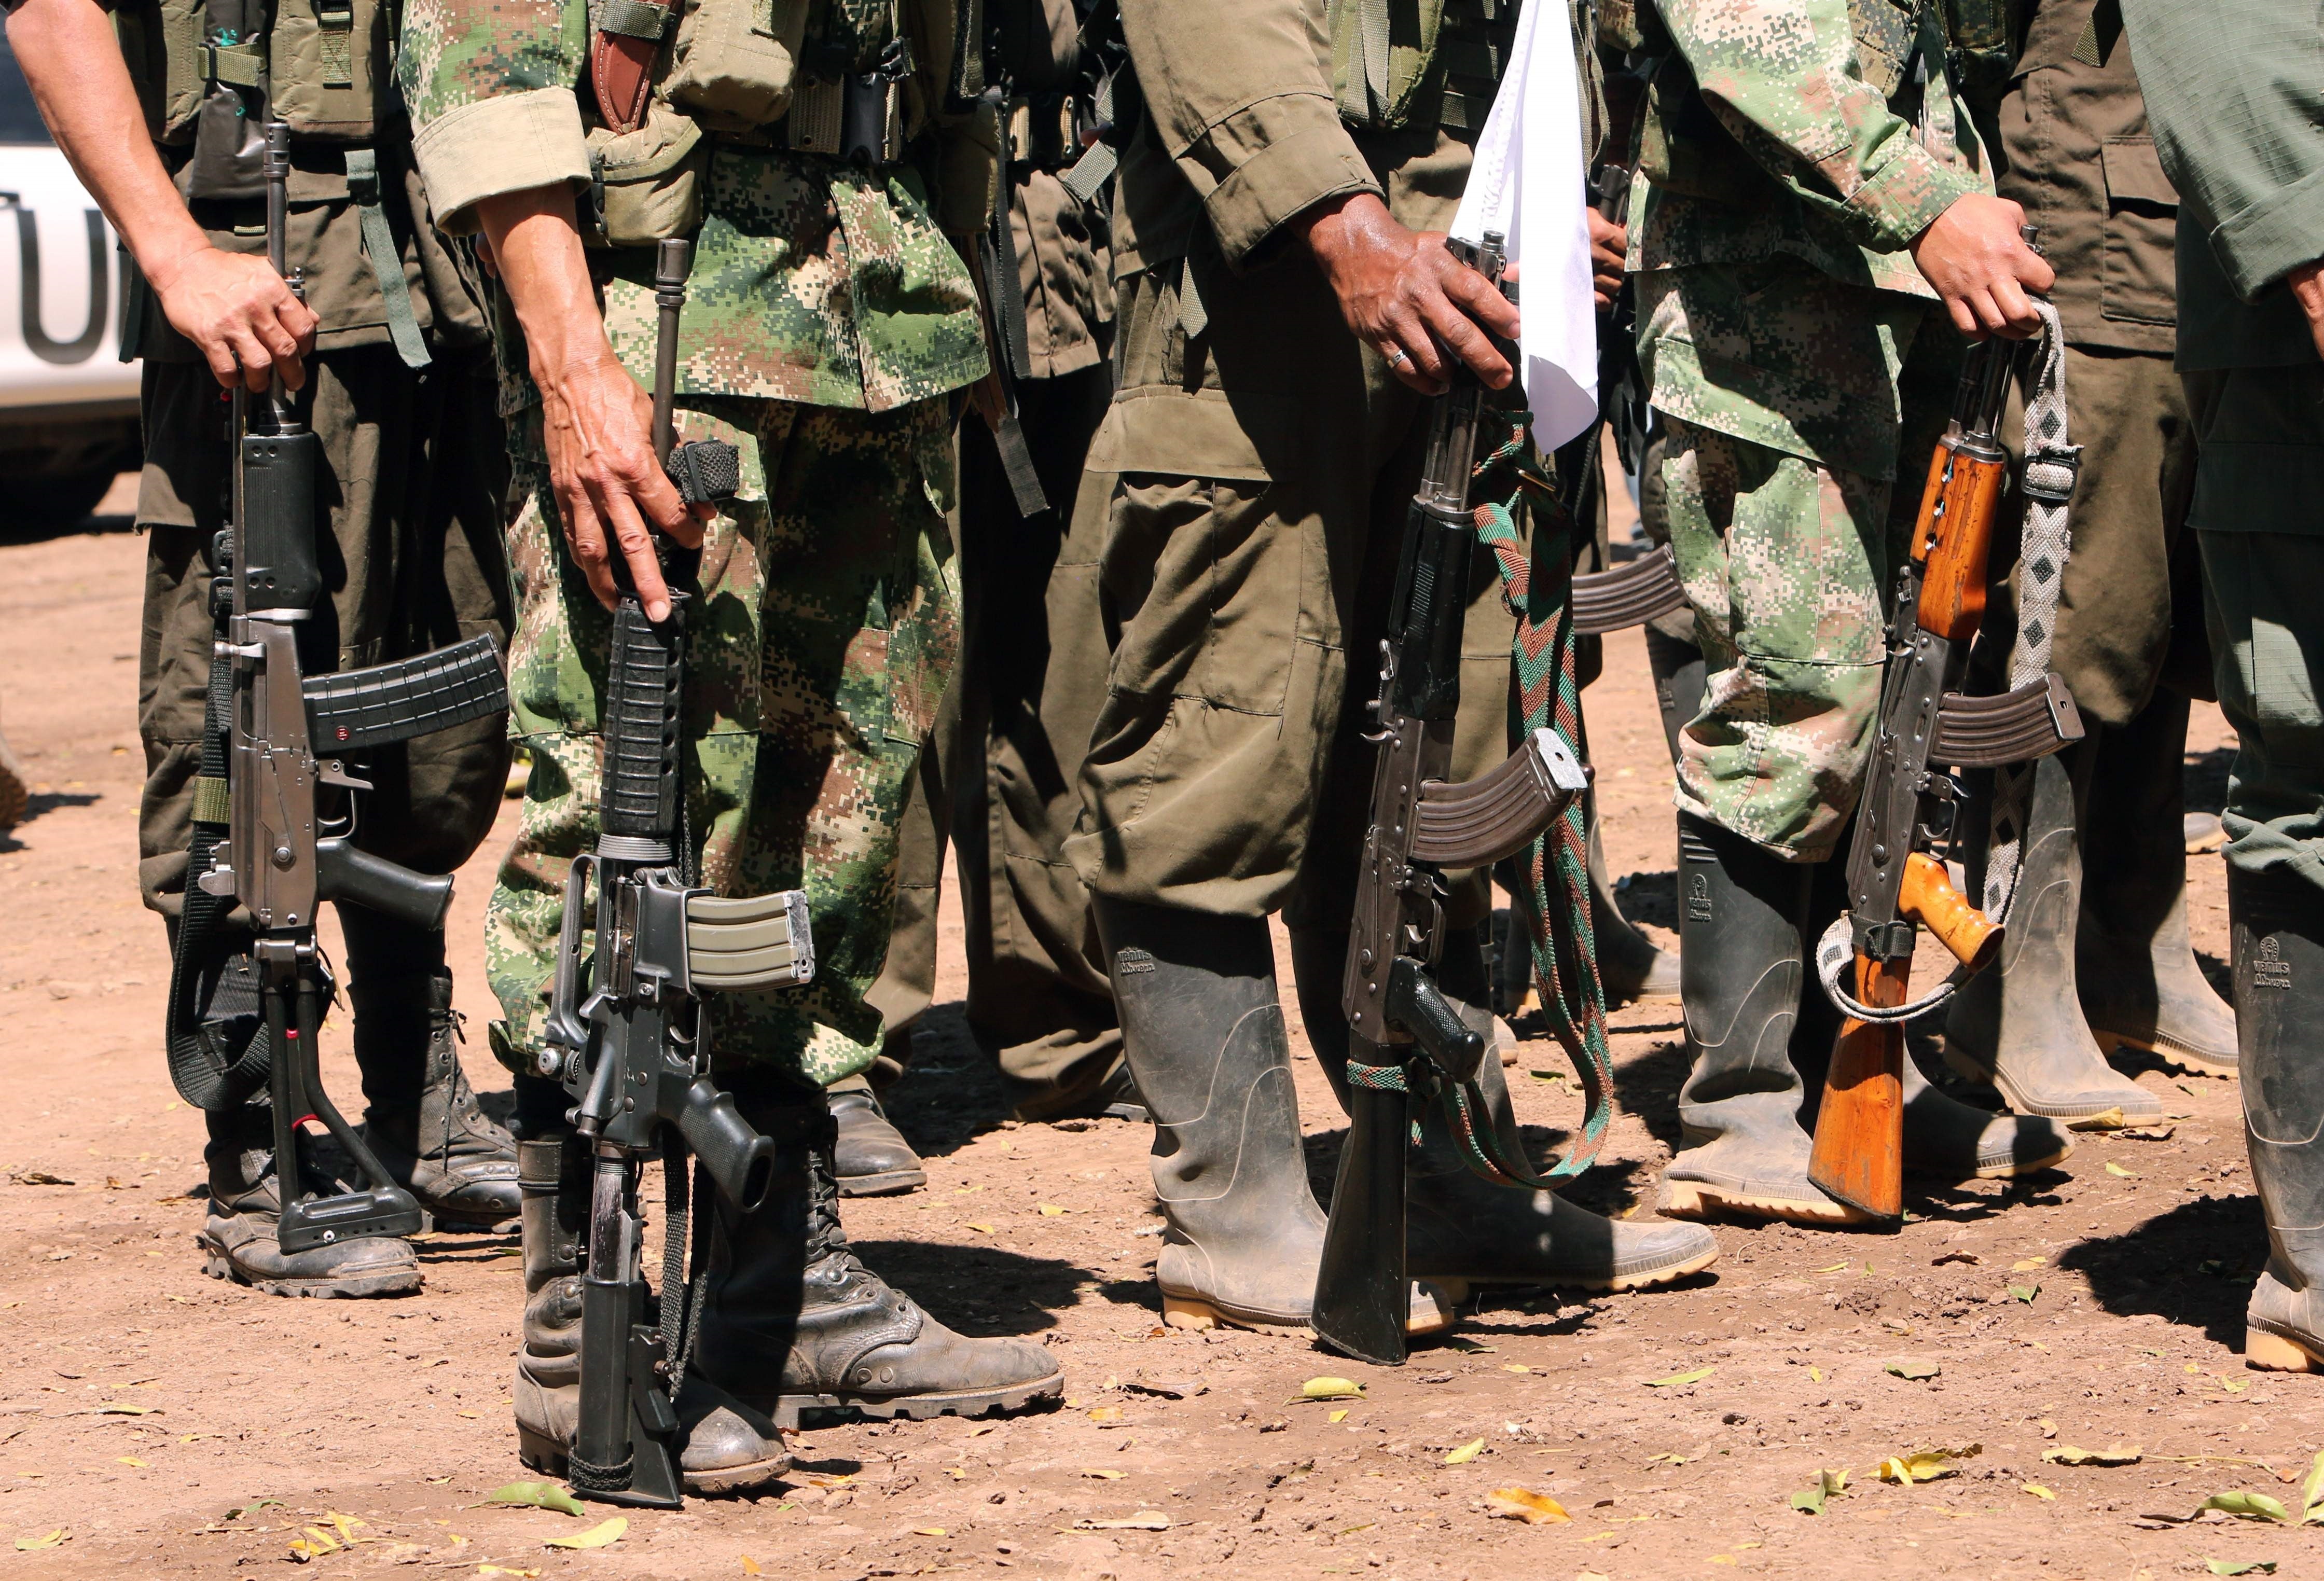 Por qué se están enfrentando las disidencias en el Putumayo: “Fue una traición interna”